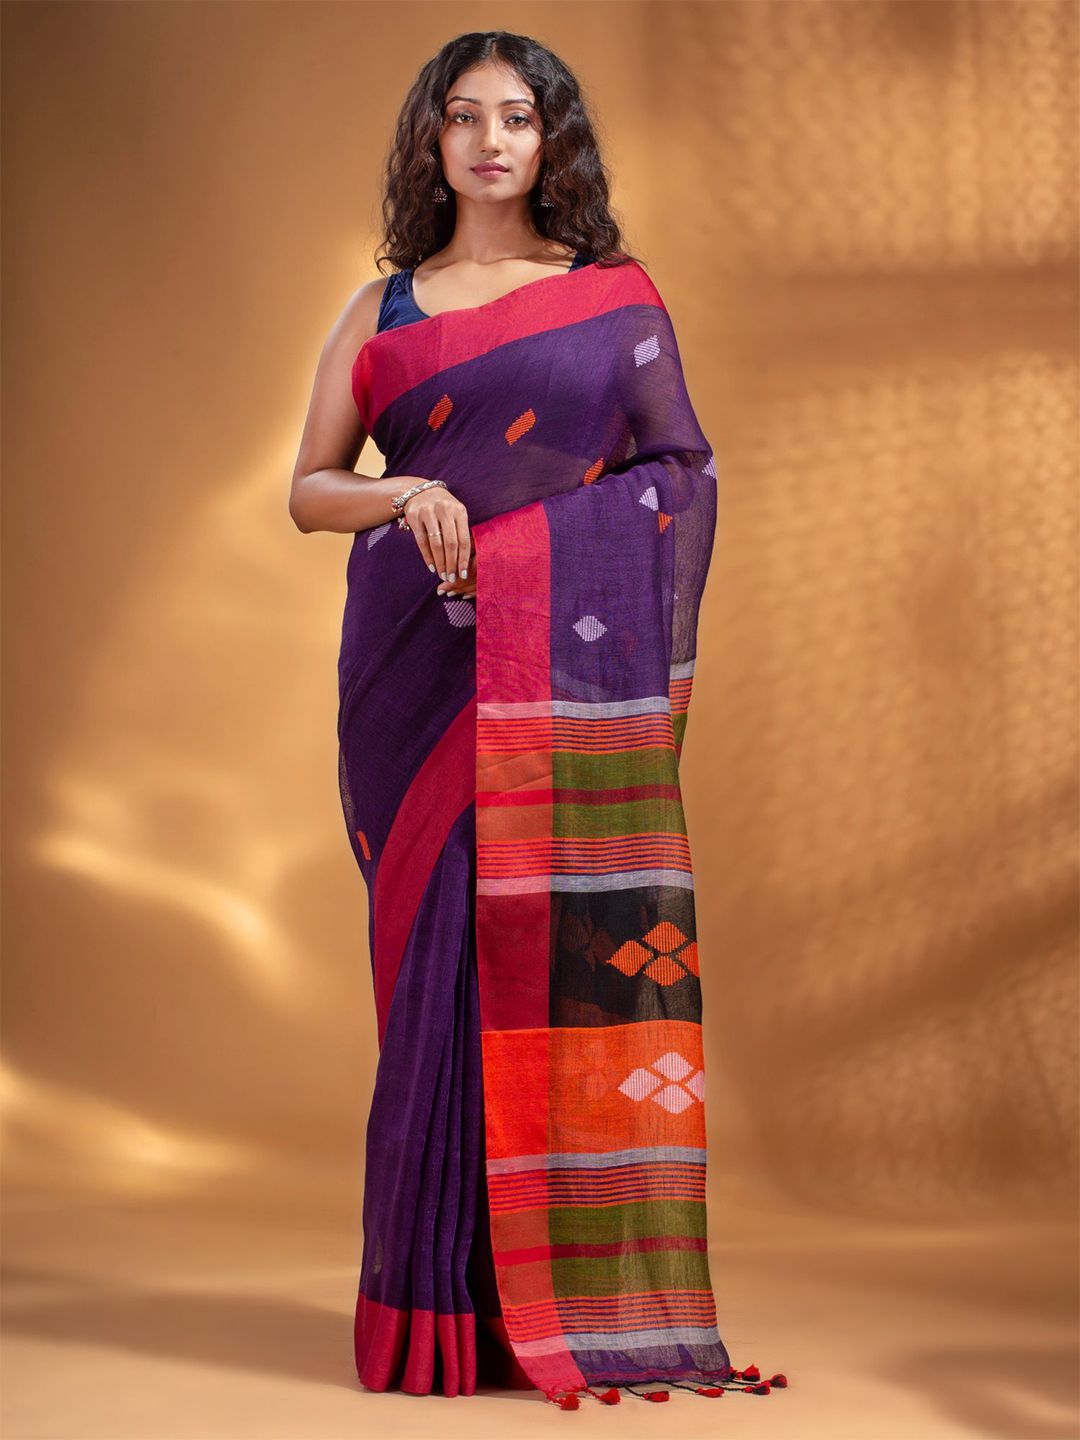 Arhi Purple & Orange Woven Design Pure Linen Saree Price in India